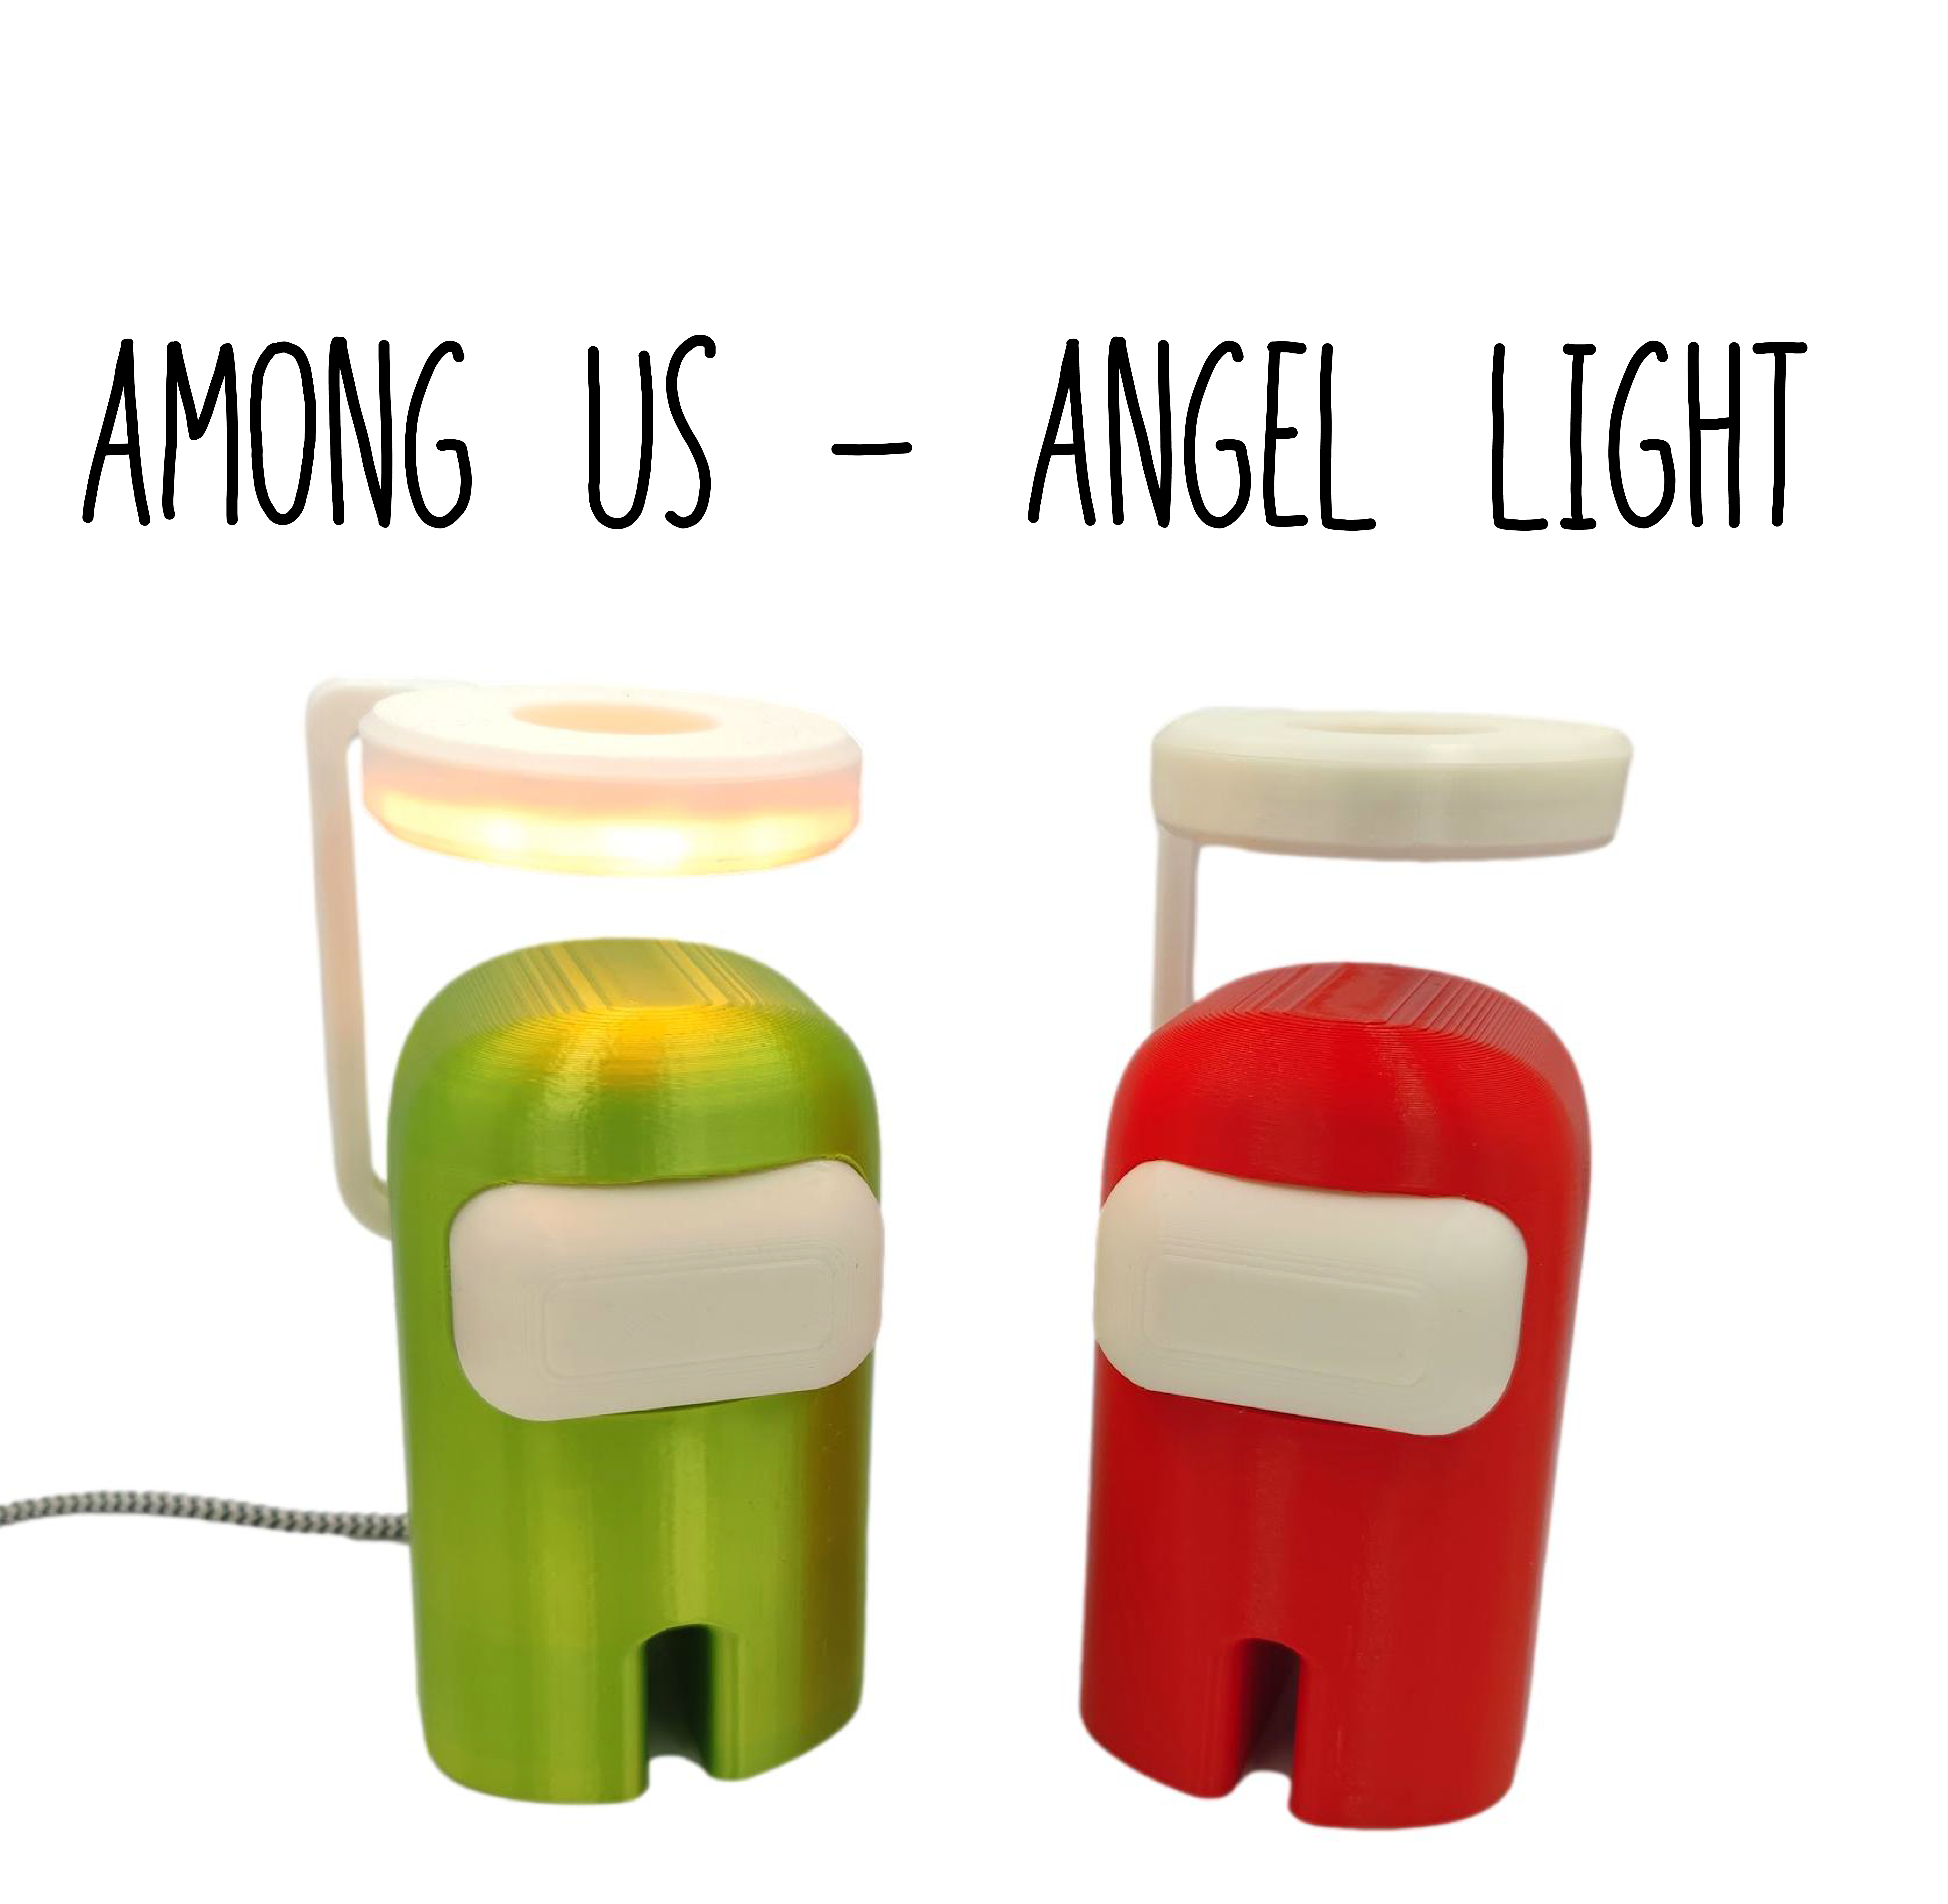 AMONG US - ANGLE LIGHT